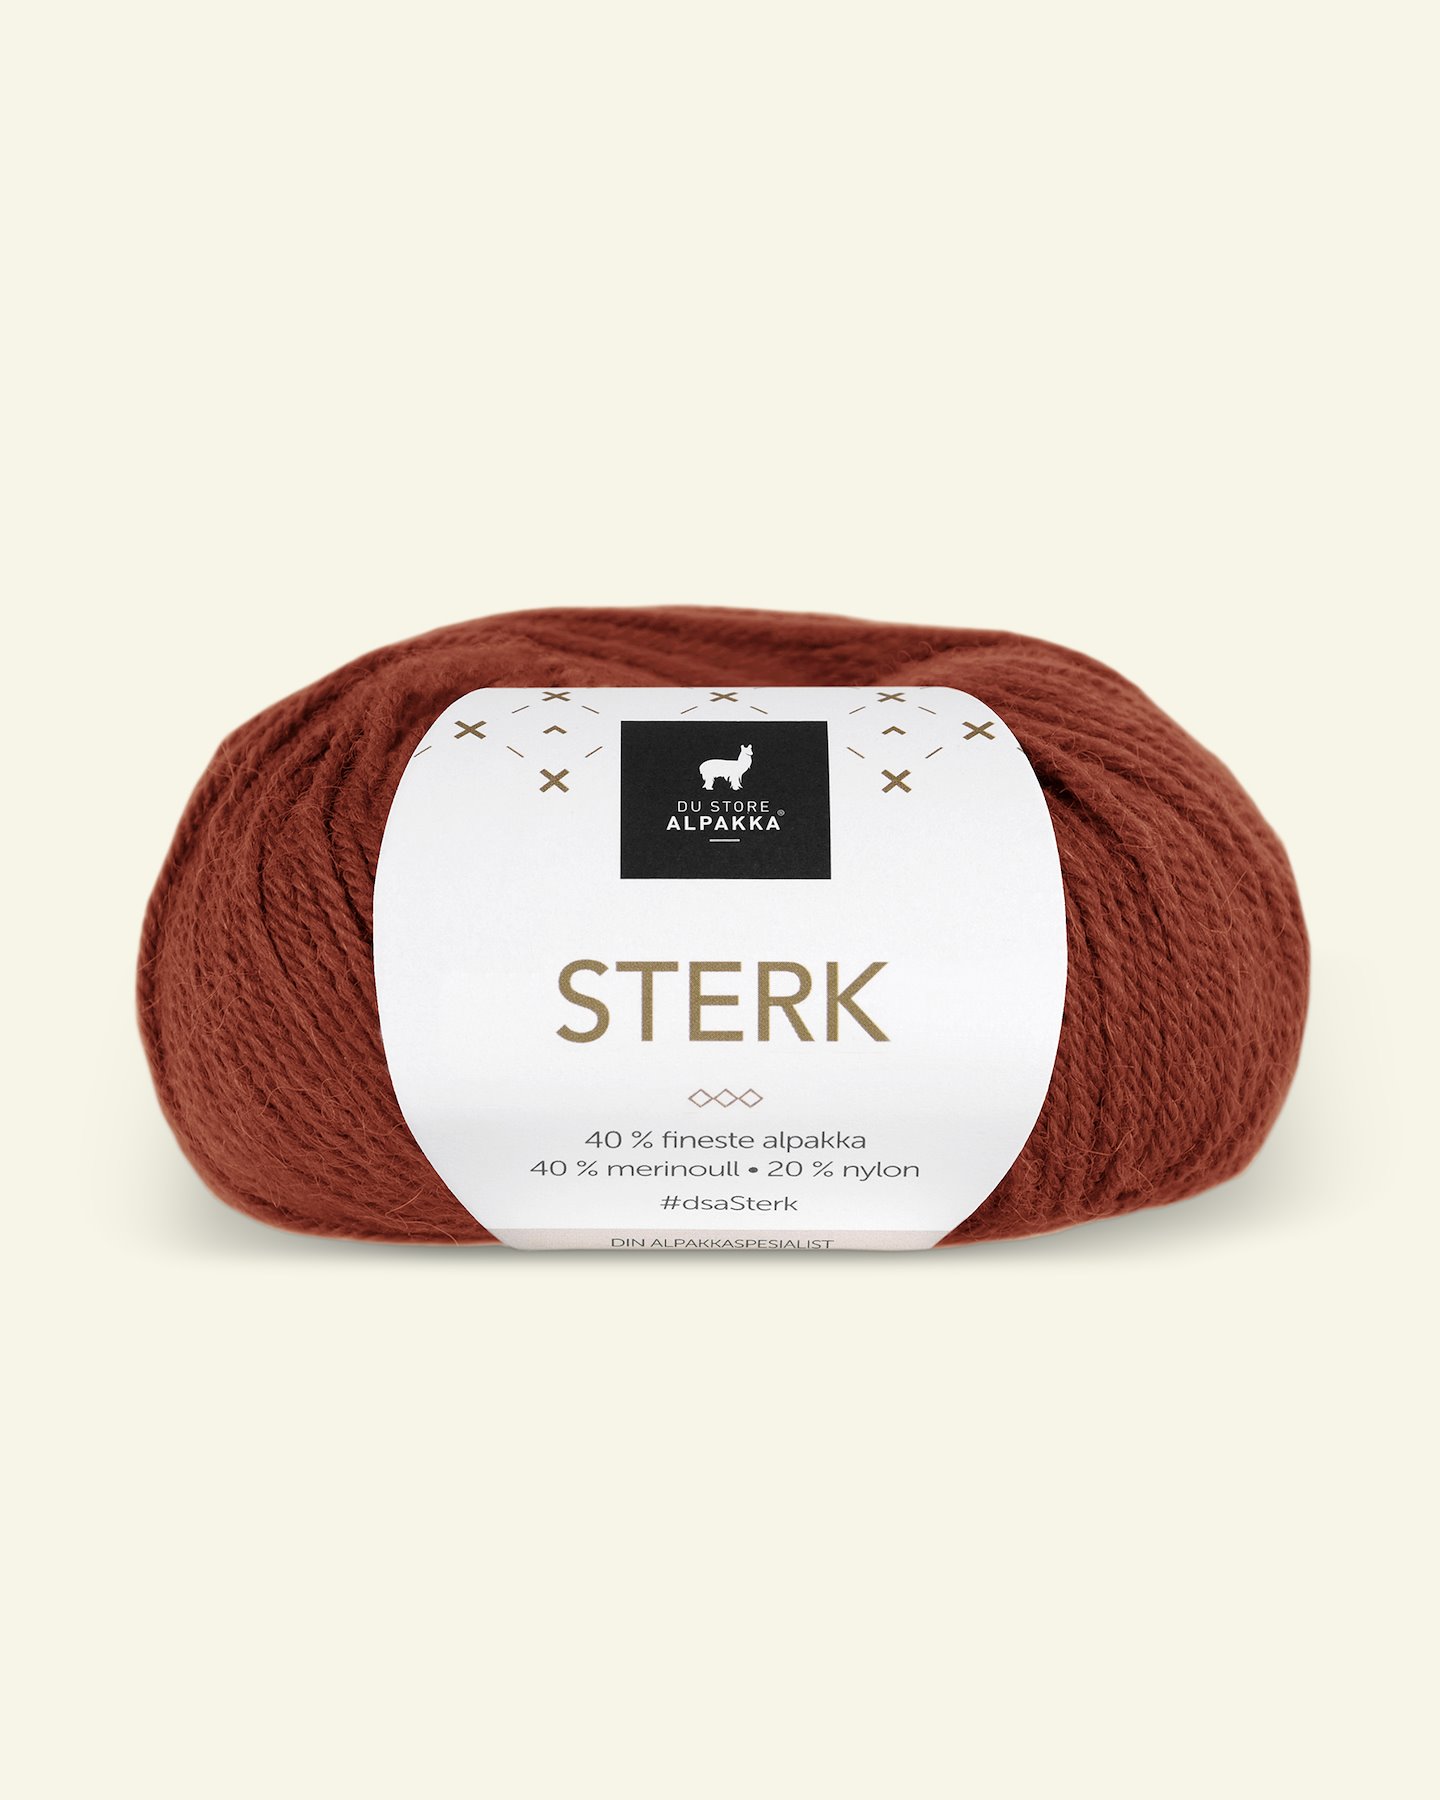 Du Store Alpakka, alpaca merino blandingsgarn, "Sterk", gylden brun (862) 90000684_pack